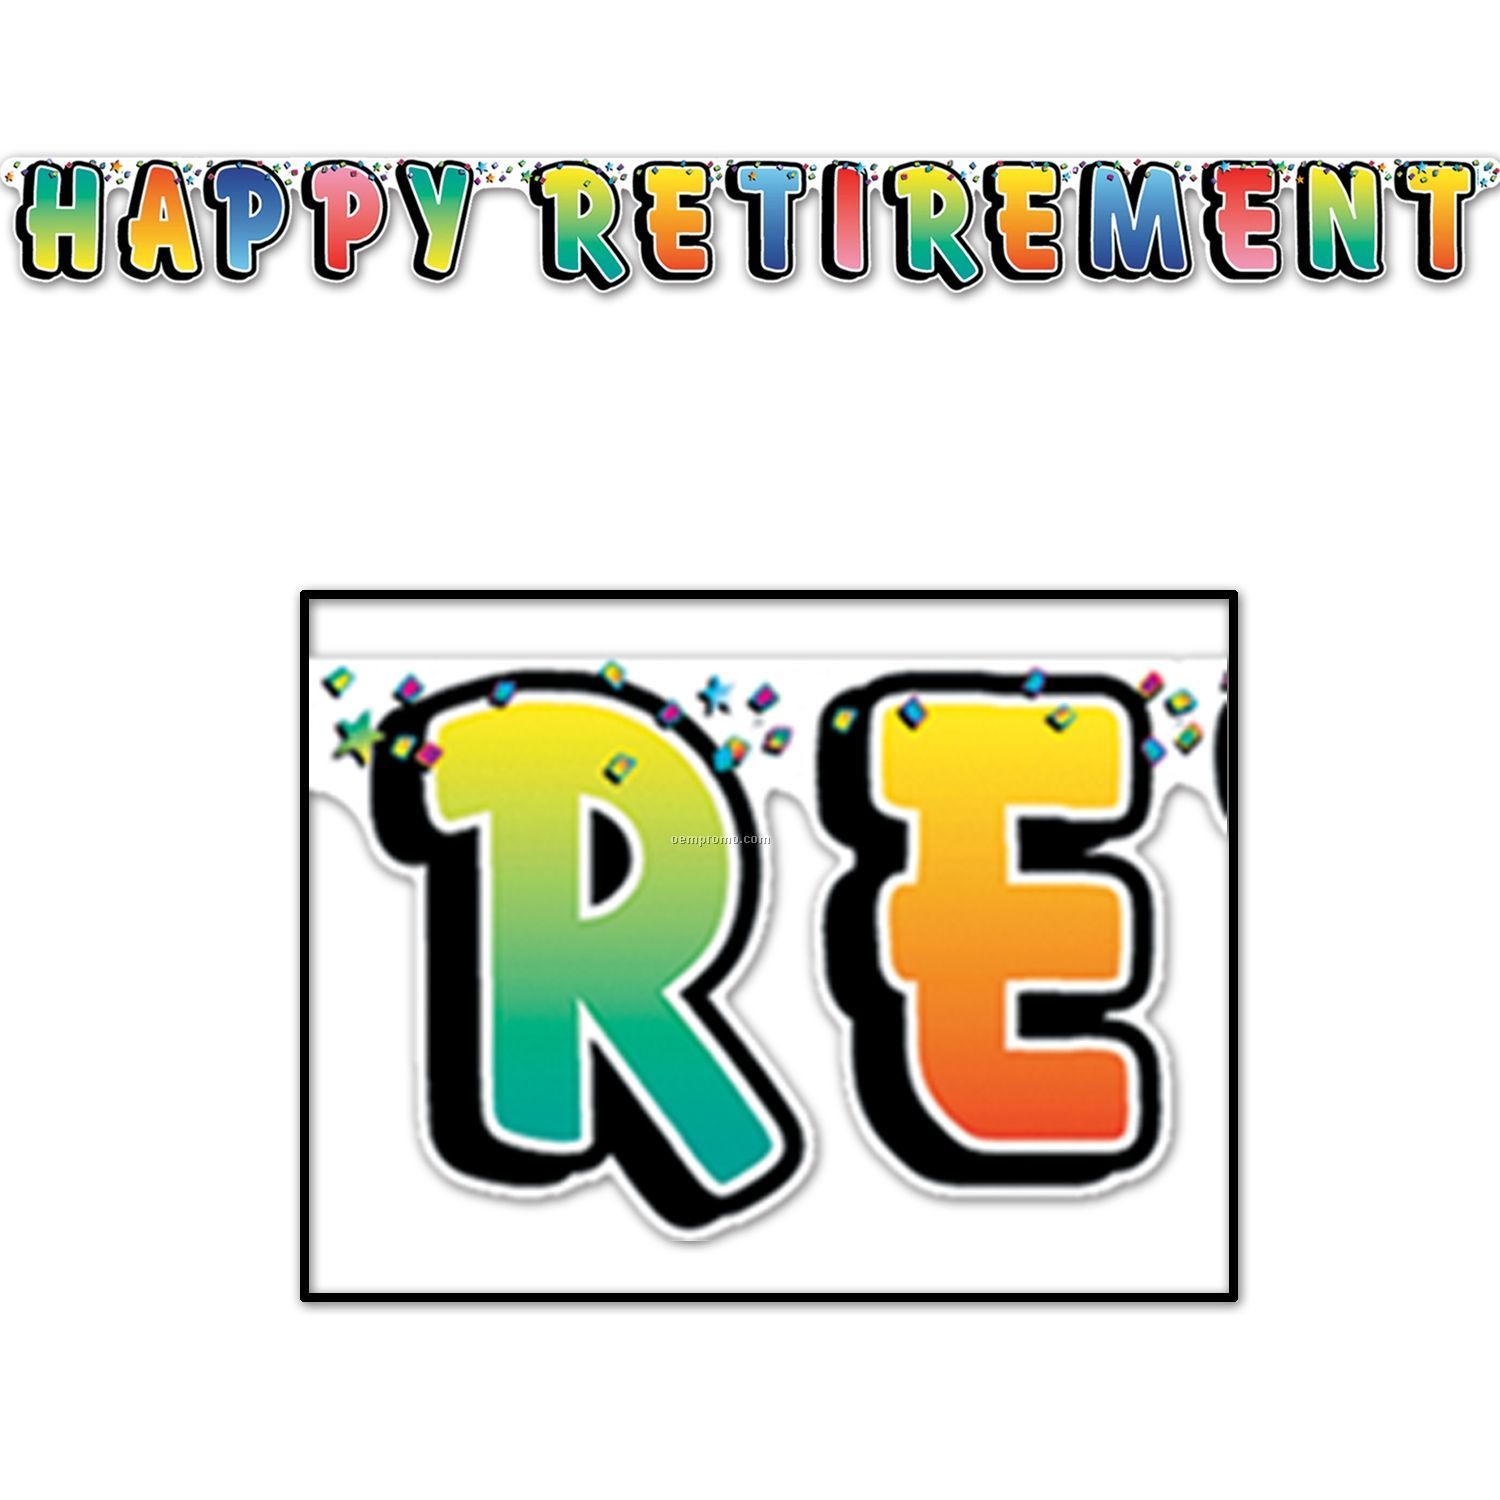 Retirement clip art 9 - Cliparting.com